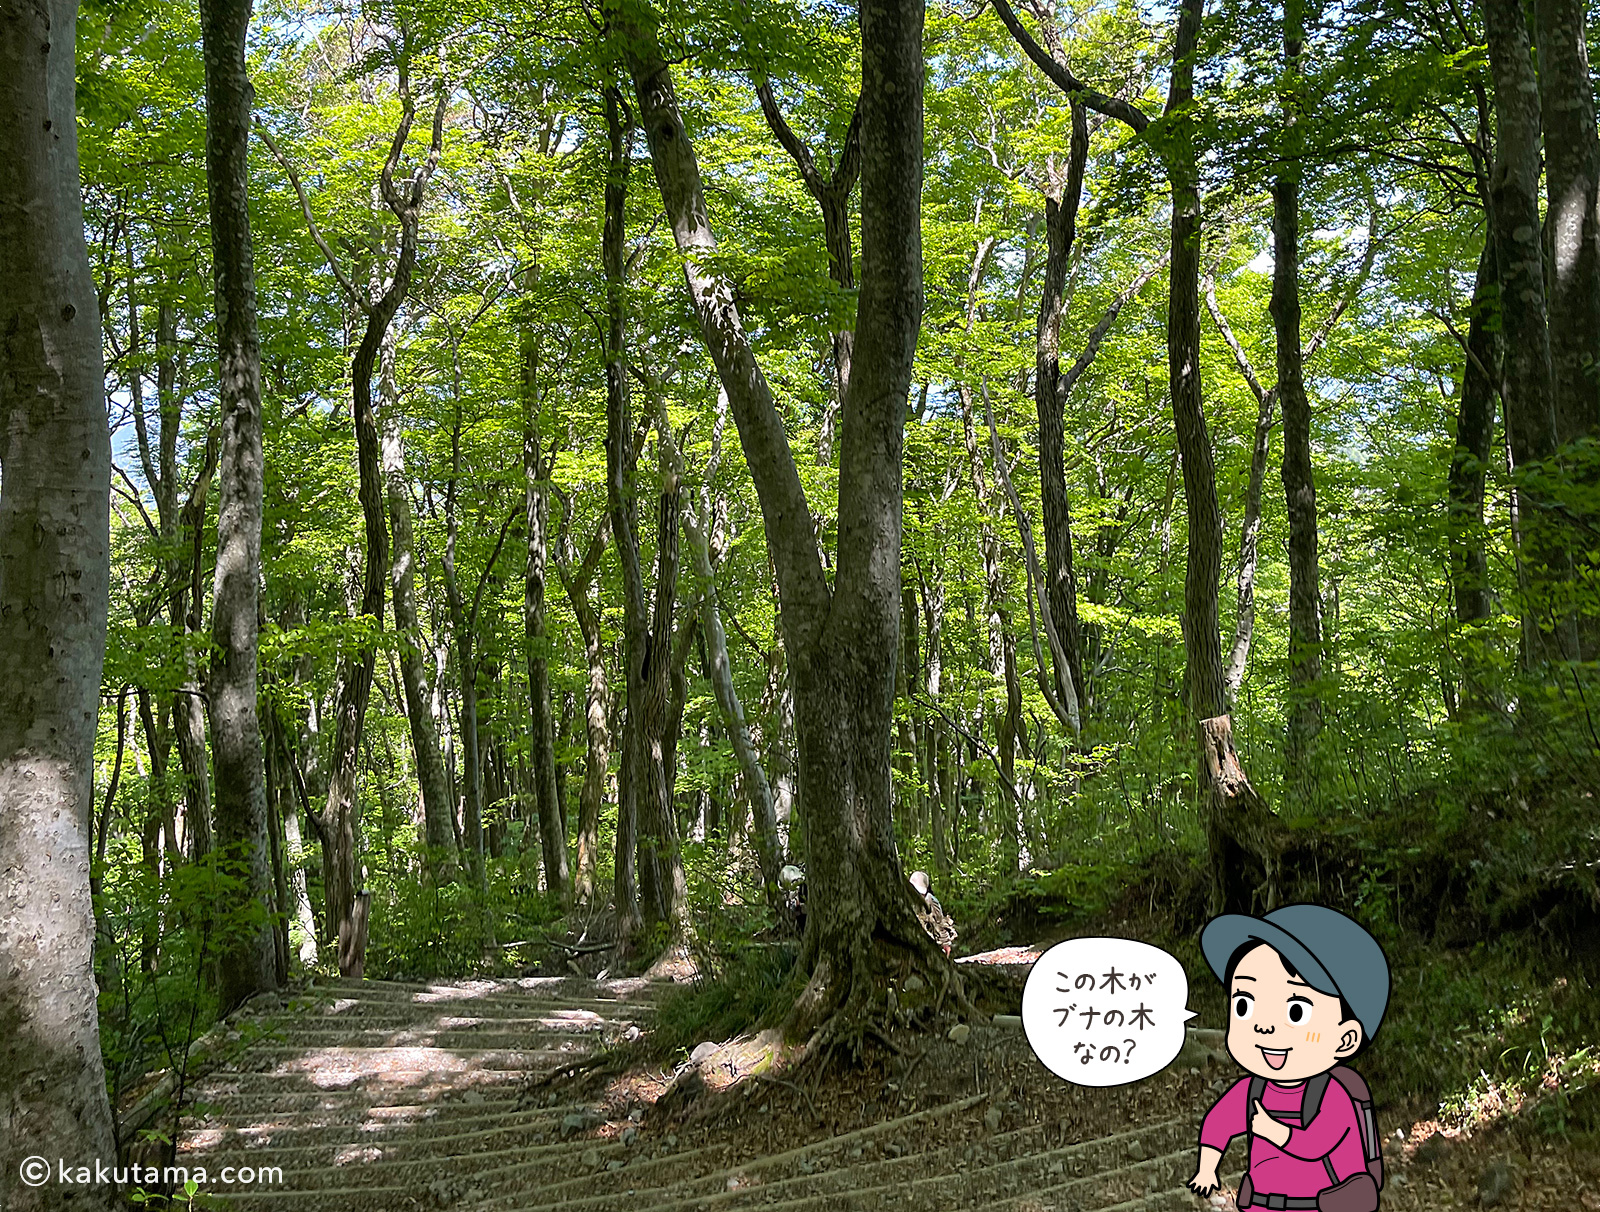 鳥取大山の夏山登山道のブナの木の写真と登山者のイラスト